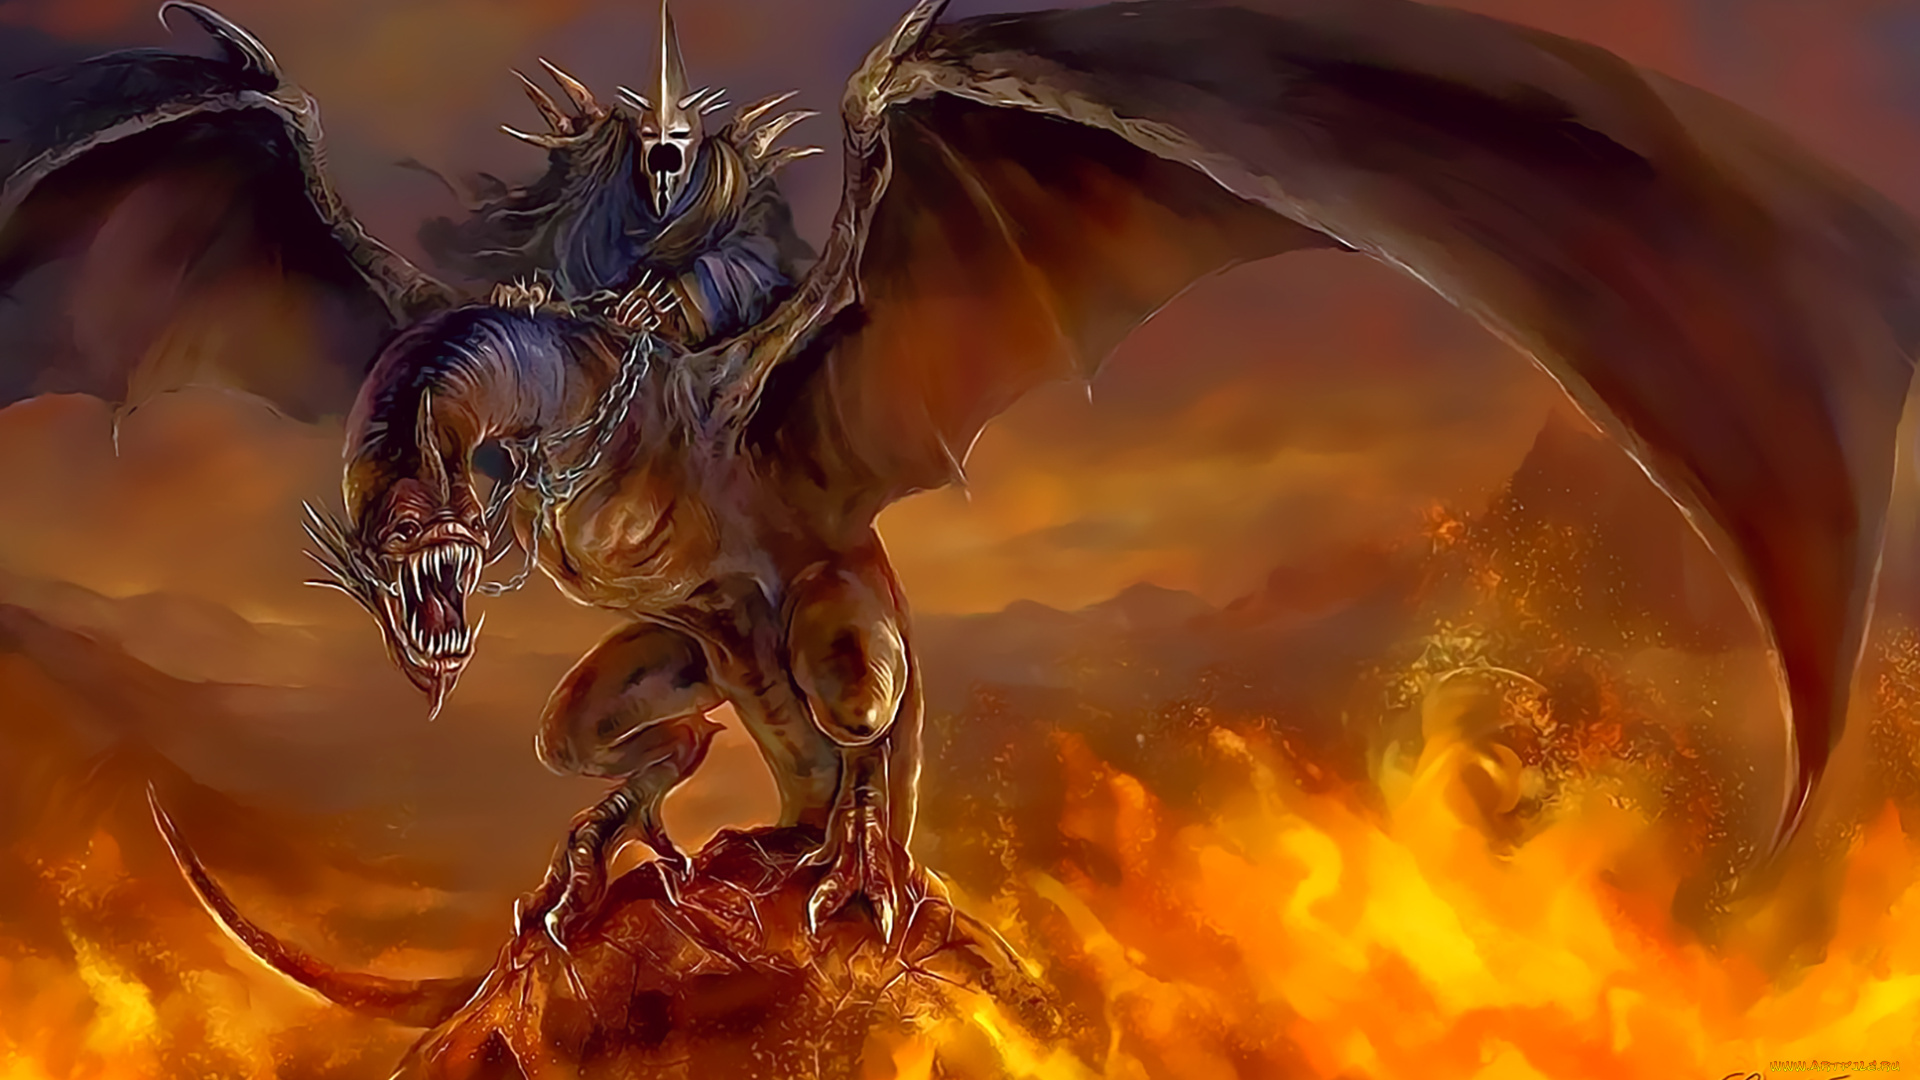 календари, фэнтези, дракон, пламя, огонь, крылья, монстр, существо, calendar, 2020